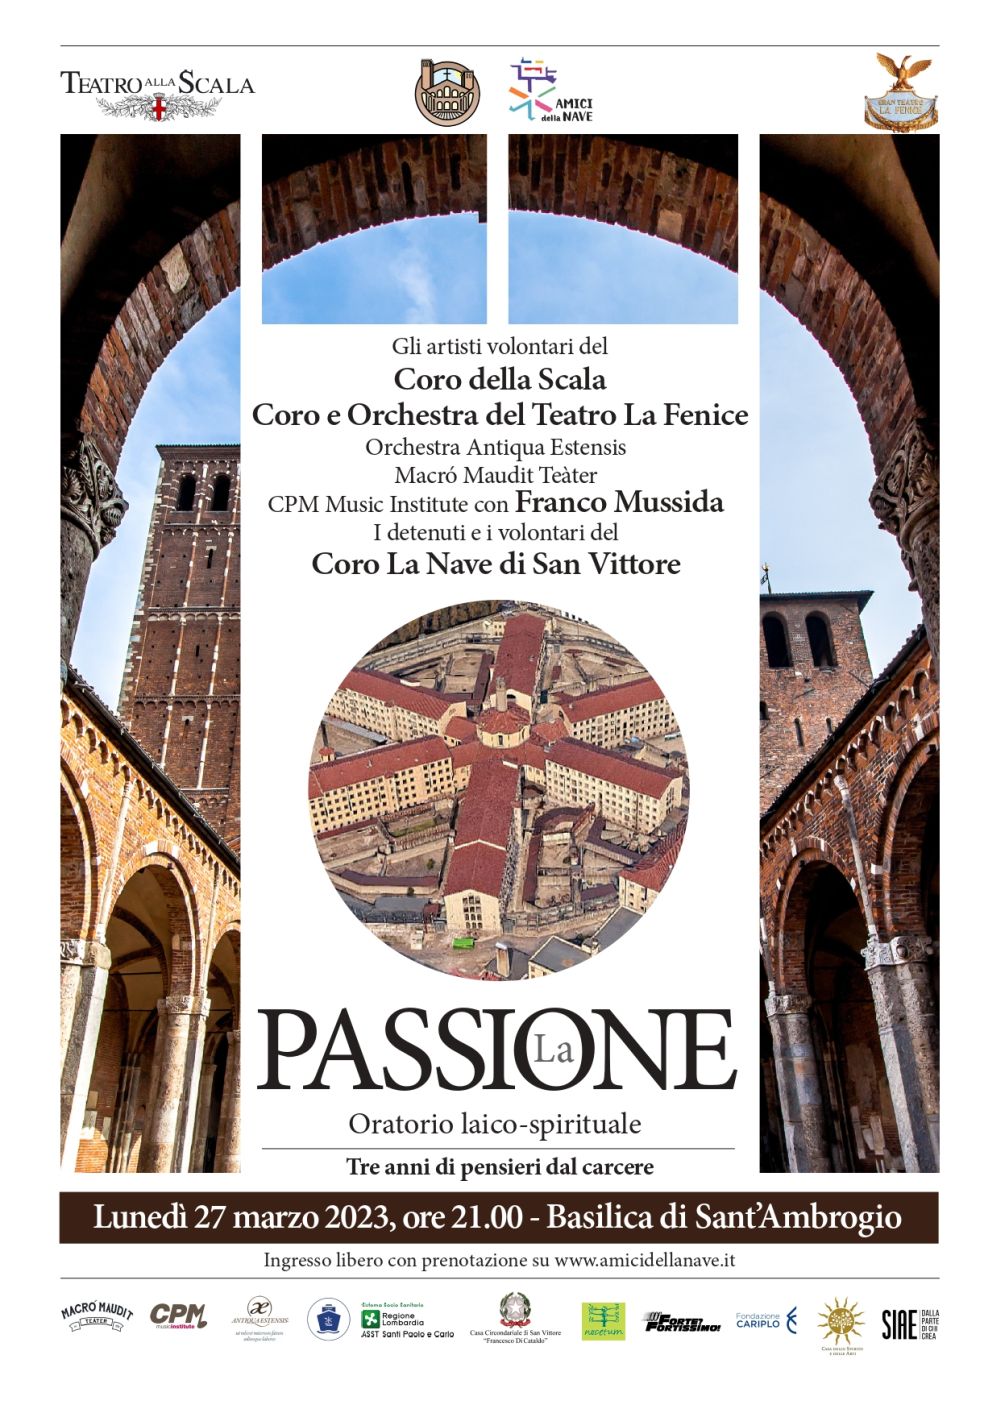 Il 27 marzo nella Basilica di Sant’Ambrogio a Milano Franco Mussida e gli allievi del CPM Music Institute di Milano